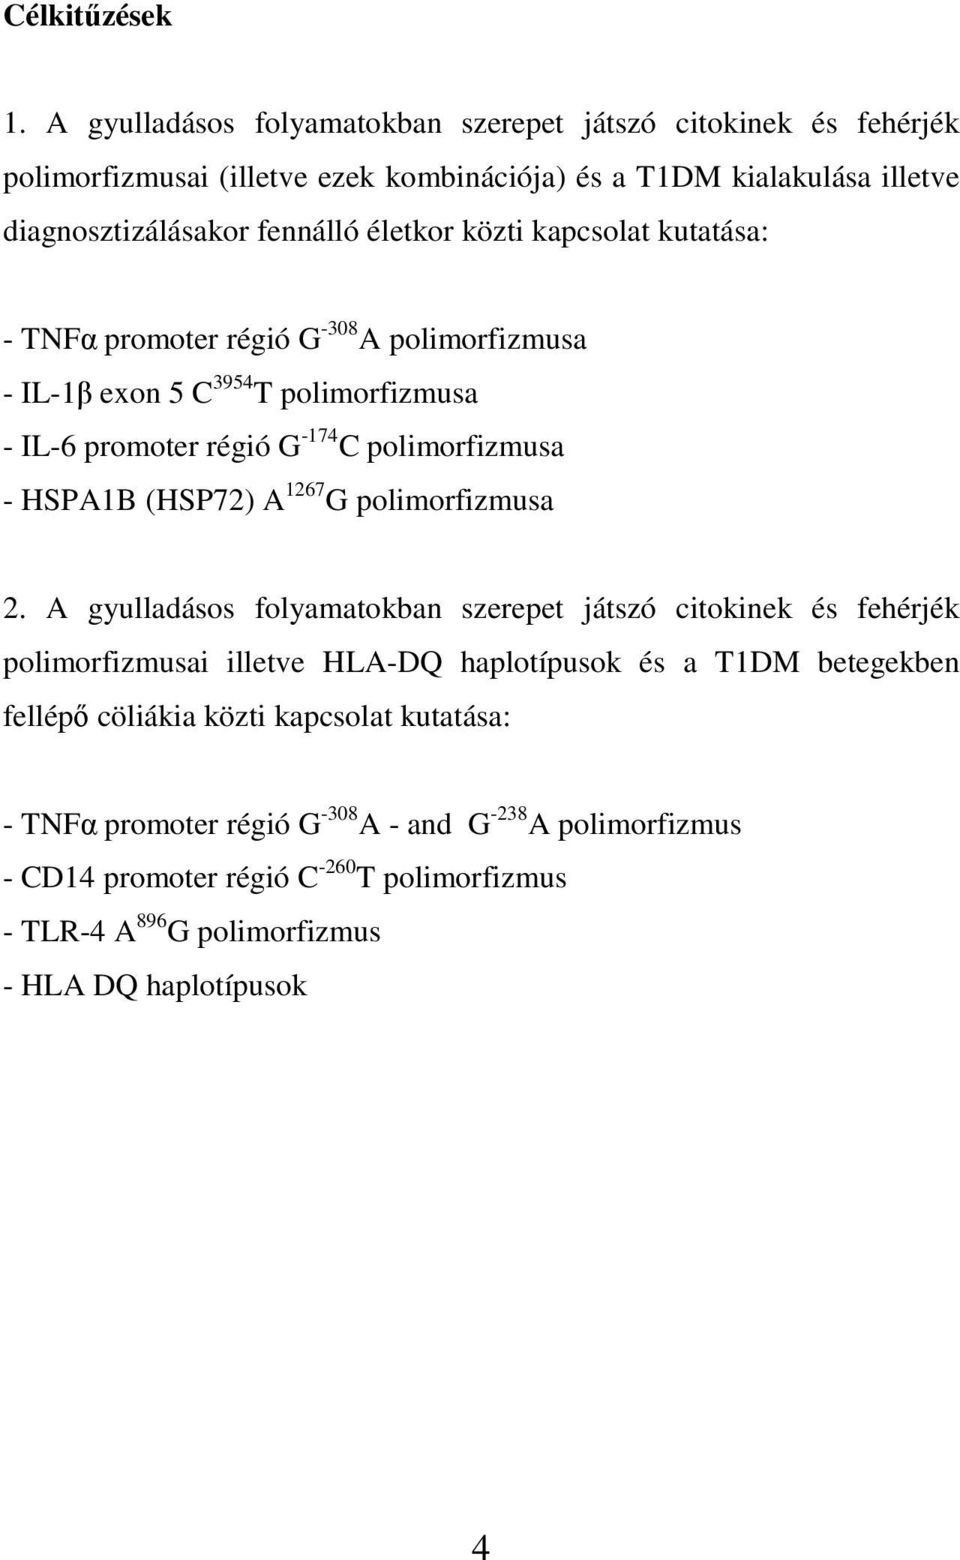 közti kapcsolat kutatása: - TNFα promoter régió G -308 A polimorfizmusa - IL-1β exon 5 C 3954 T polimorfizmusa - IL-6 promoter régió G -174 C polimorfizmusa - HSPA1B (HSP72) A 1267